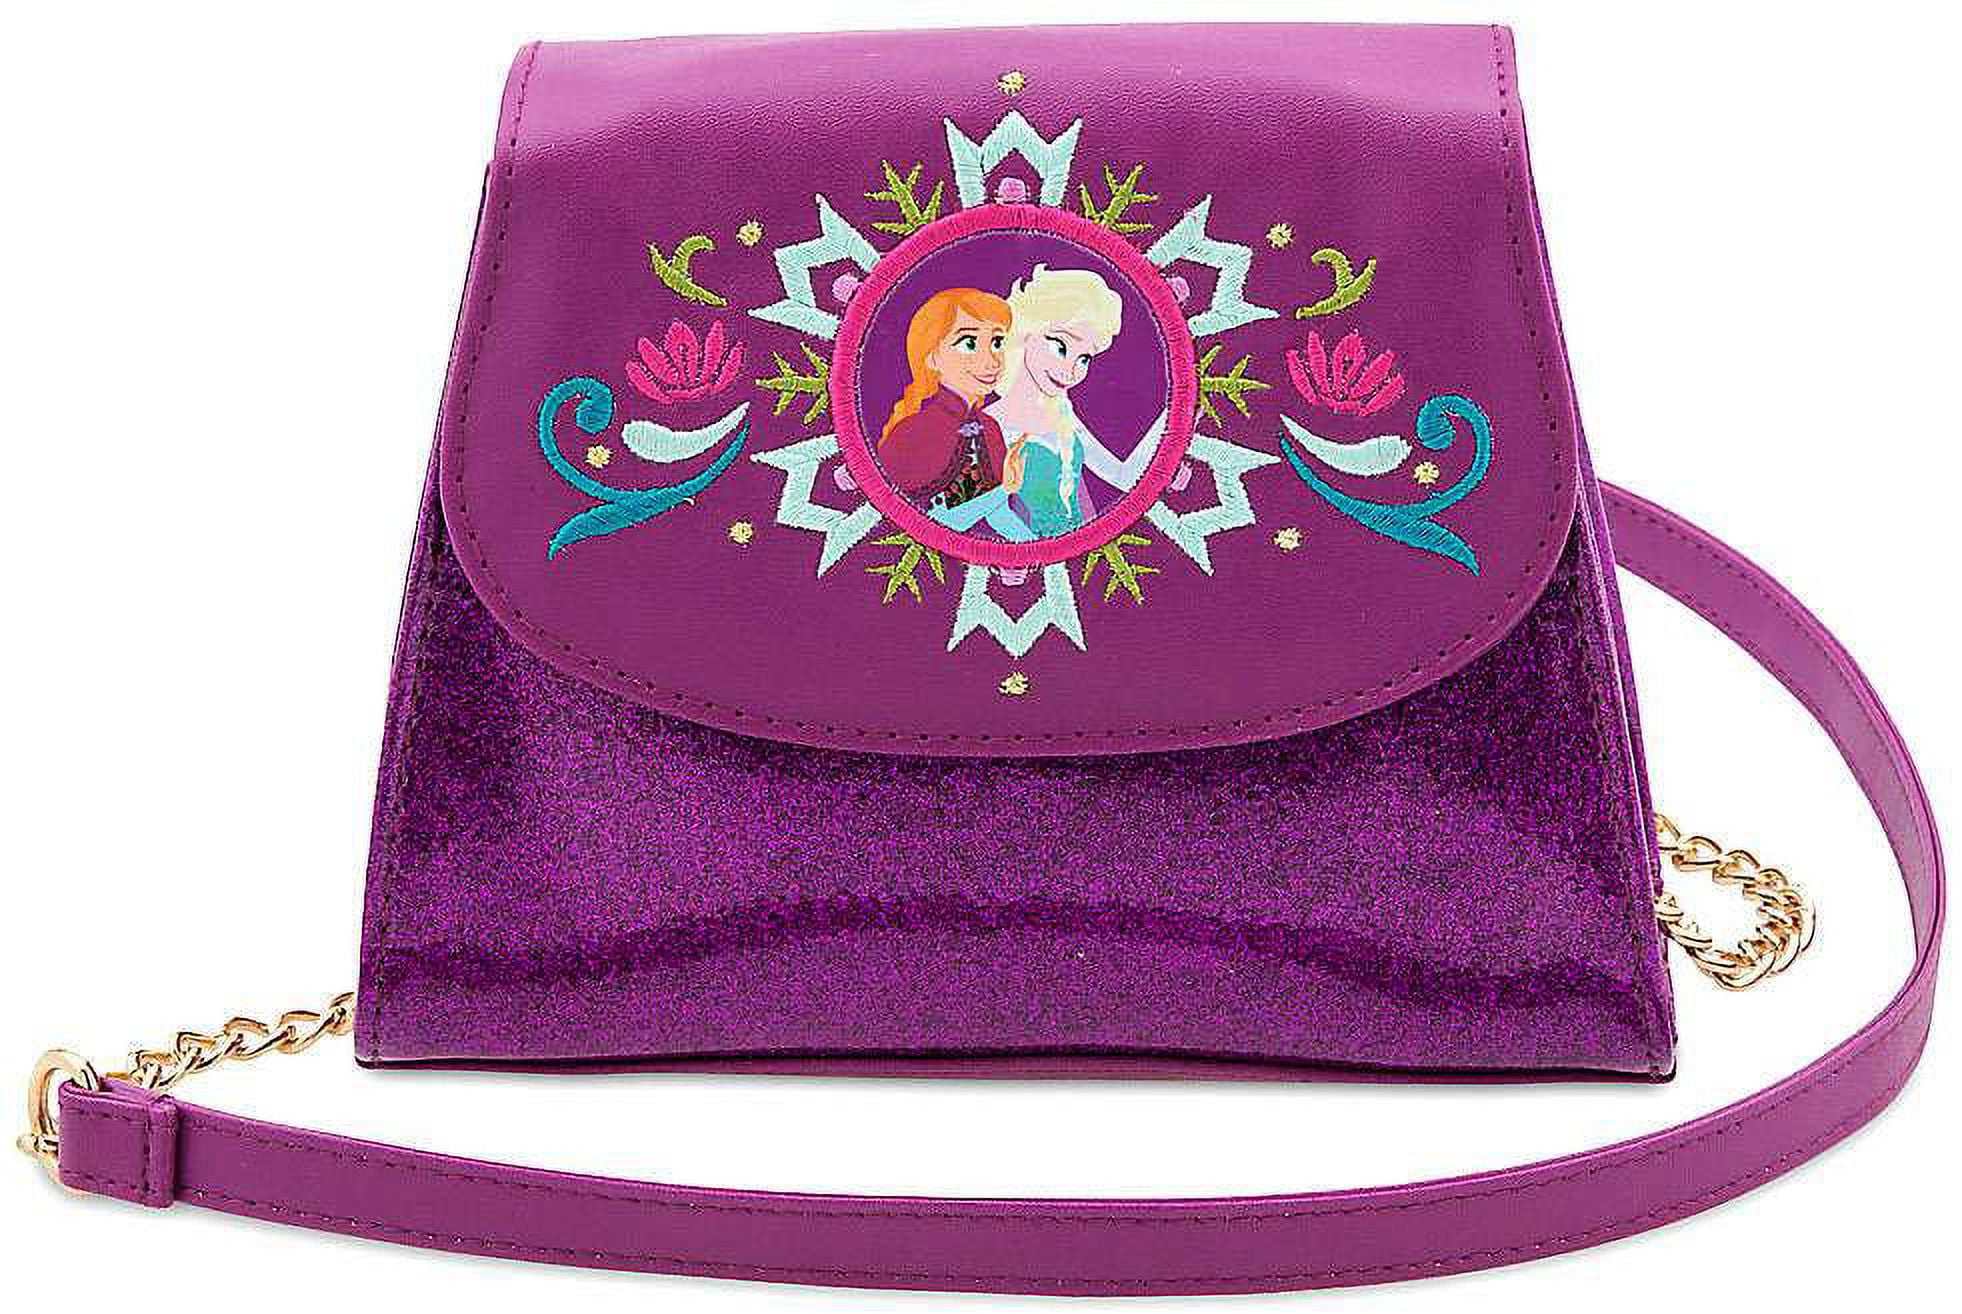 Disney Frozen Backpack Kids School Bag 30cm x 25cm - Quickdraw Supplies